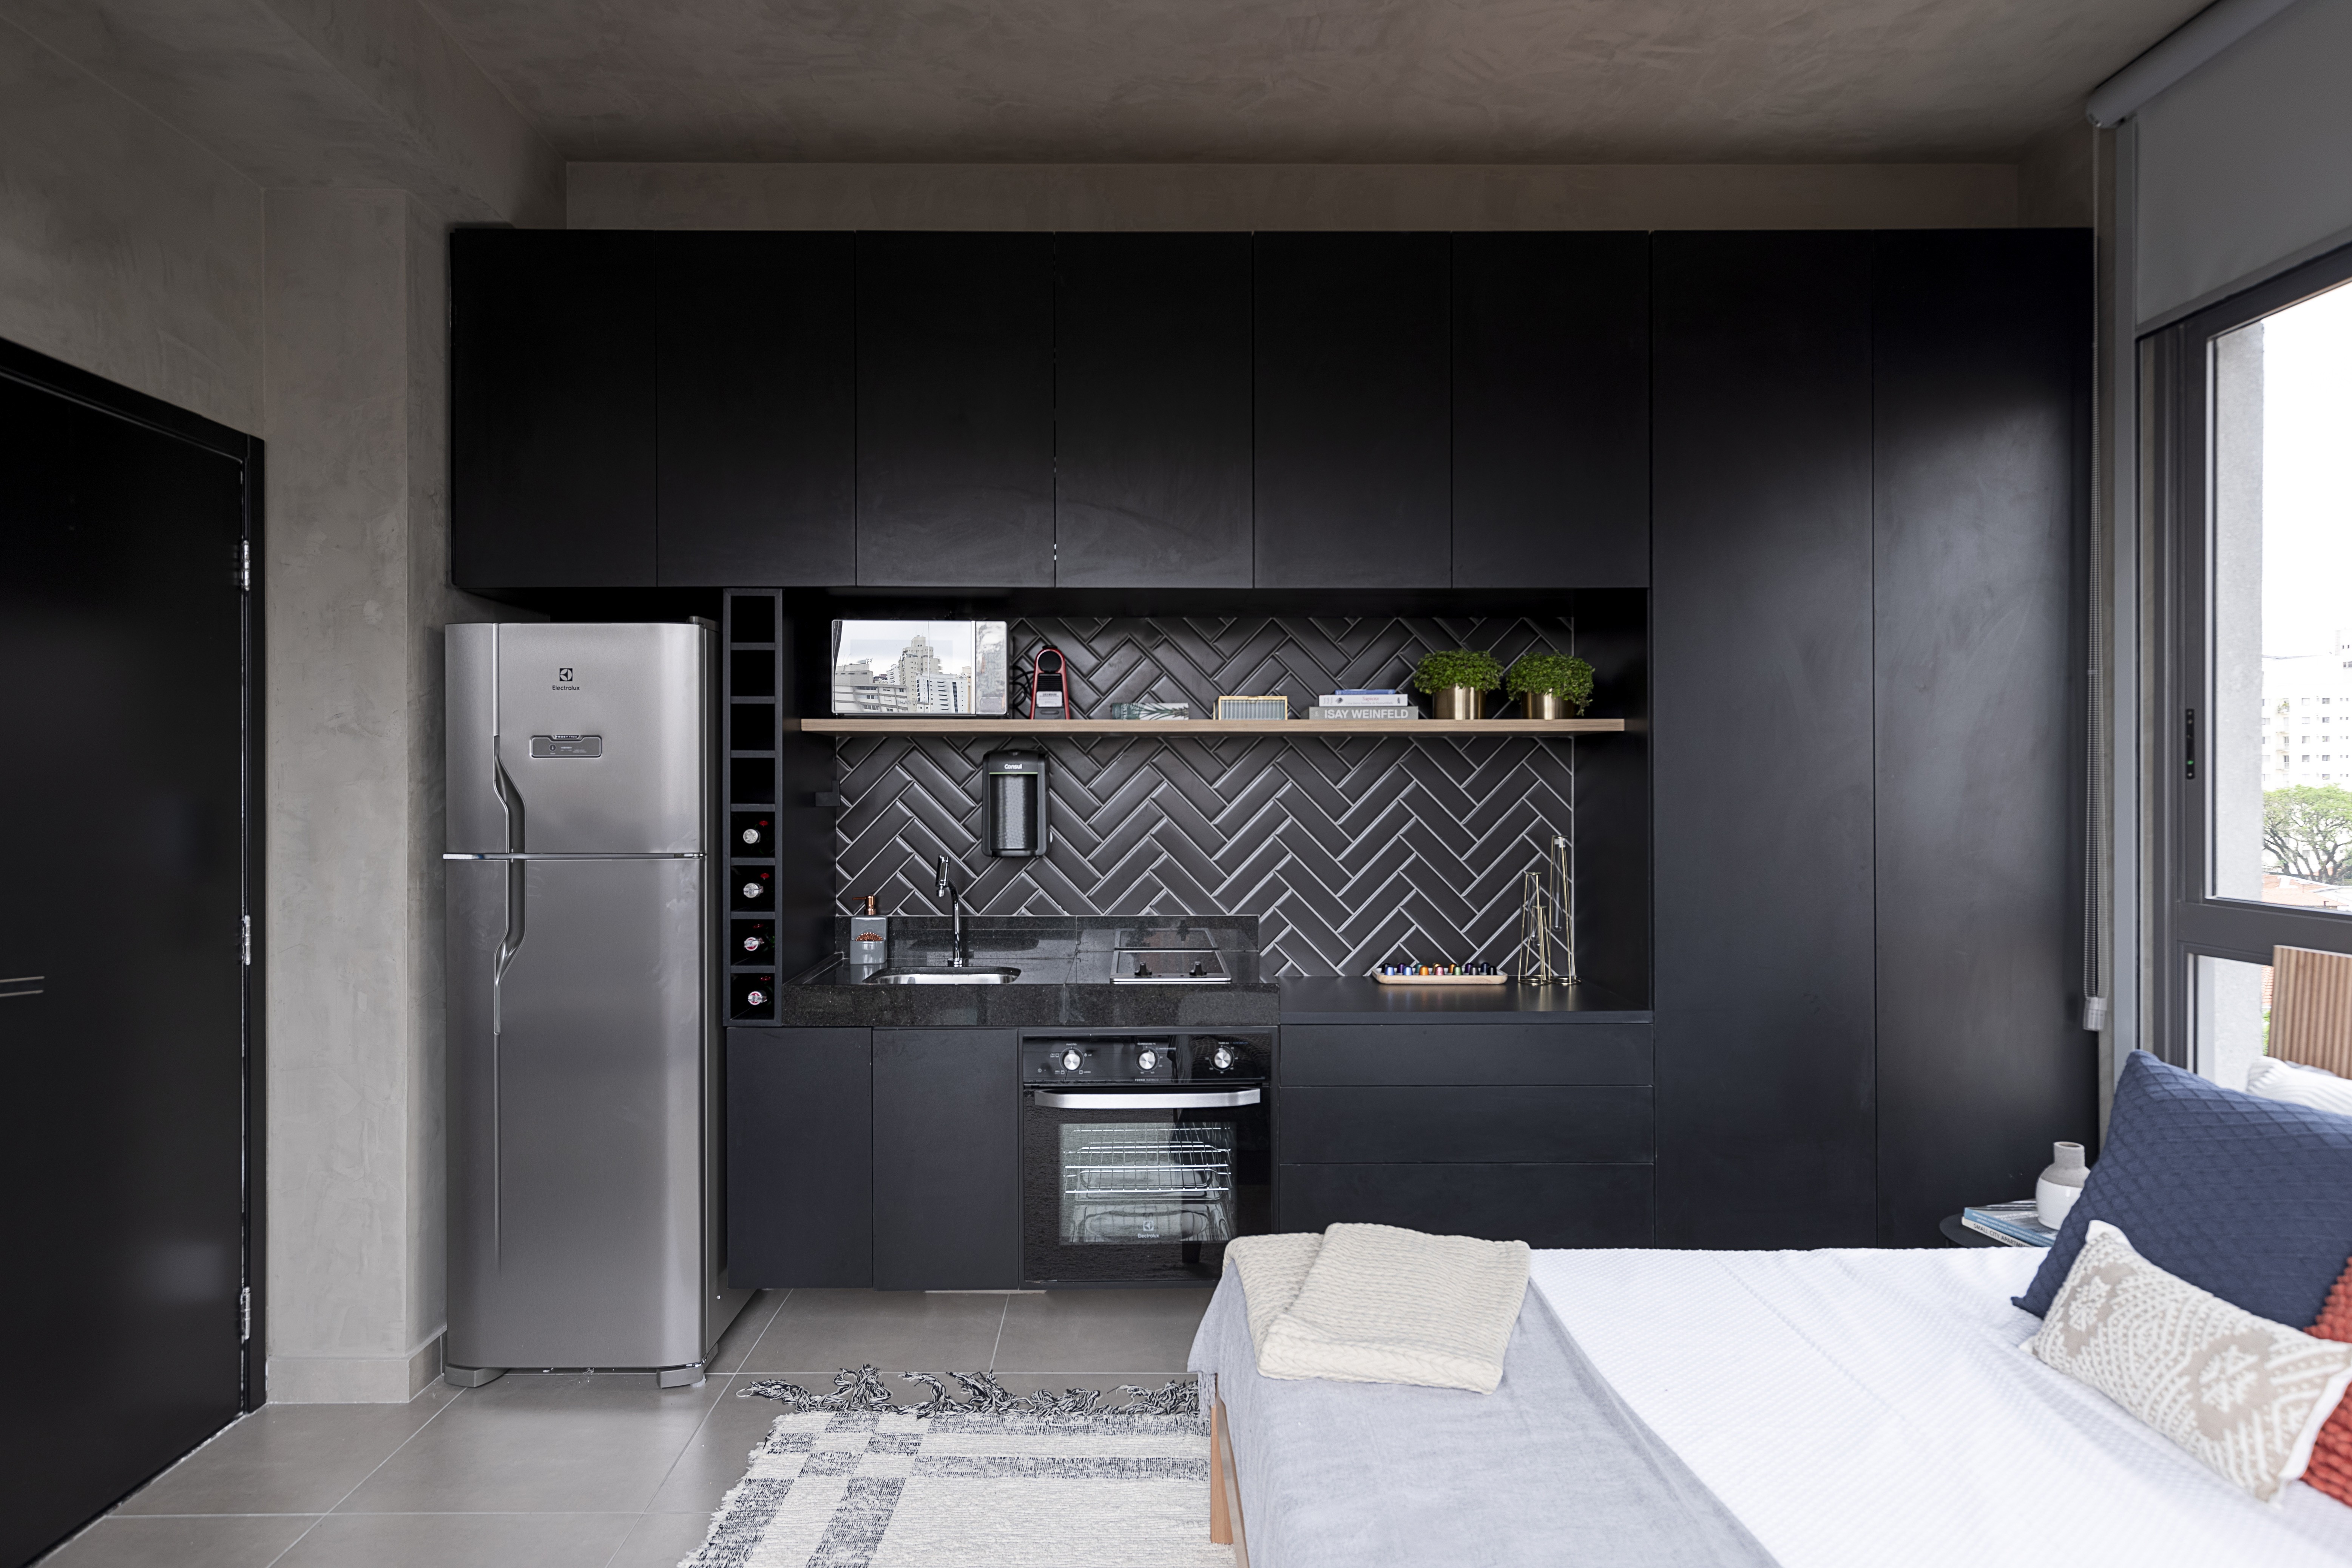 Décor do dia: cozinha preta com nichos organizadores e prateleiras funcionais (Foto: Rafael Renzo)